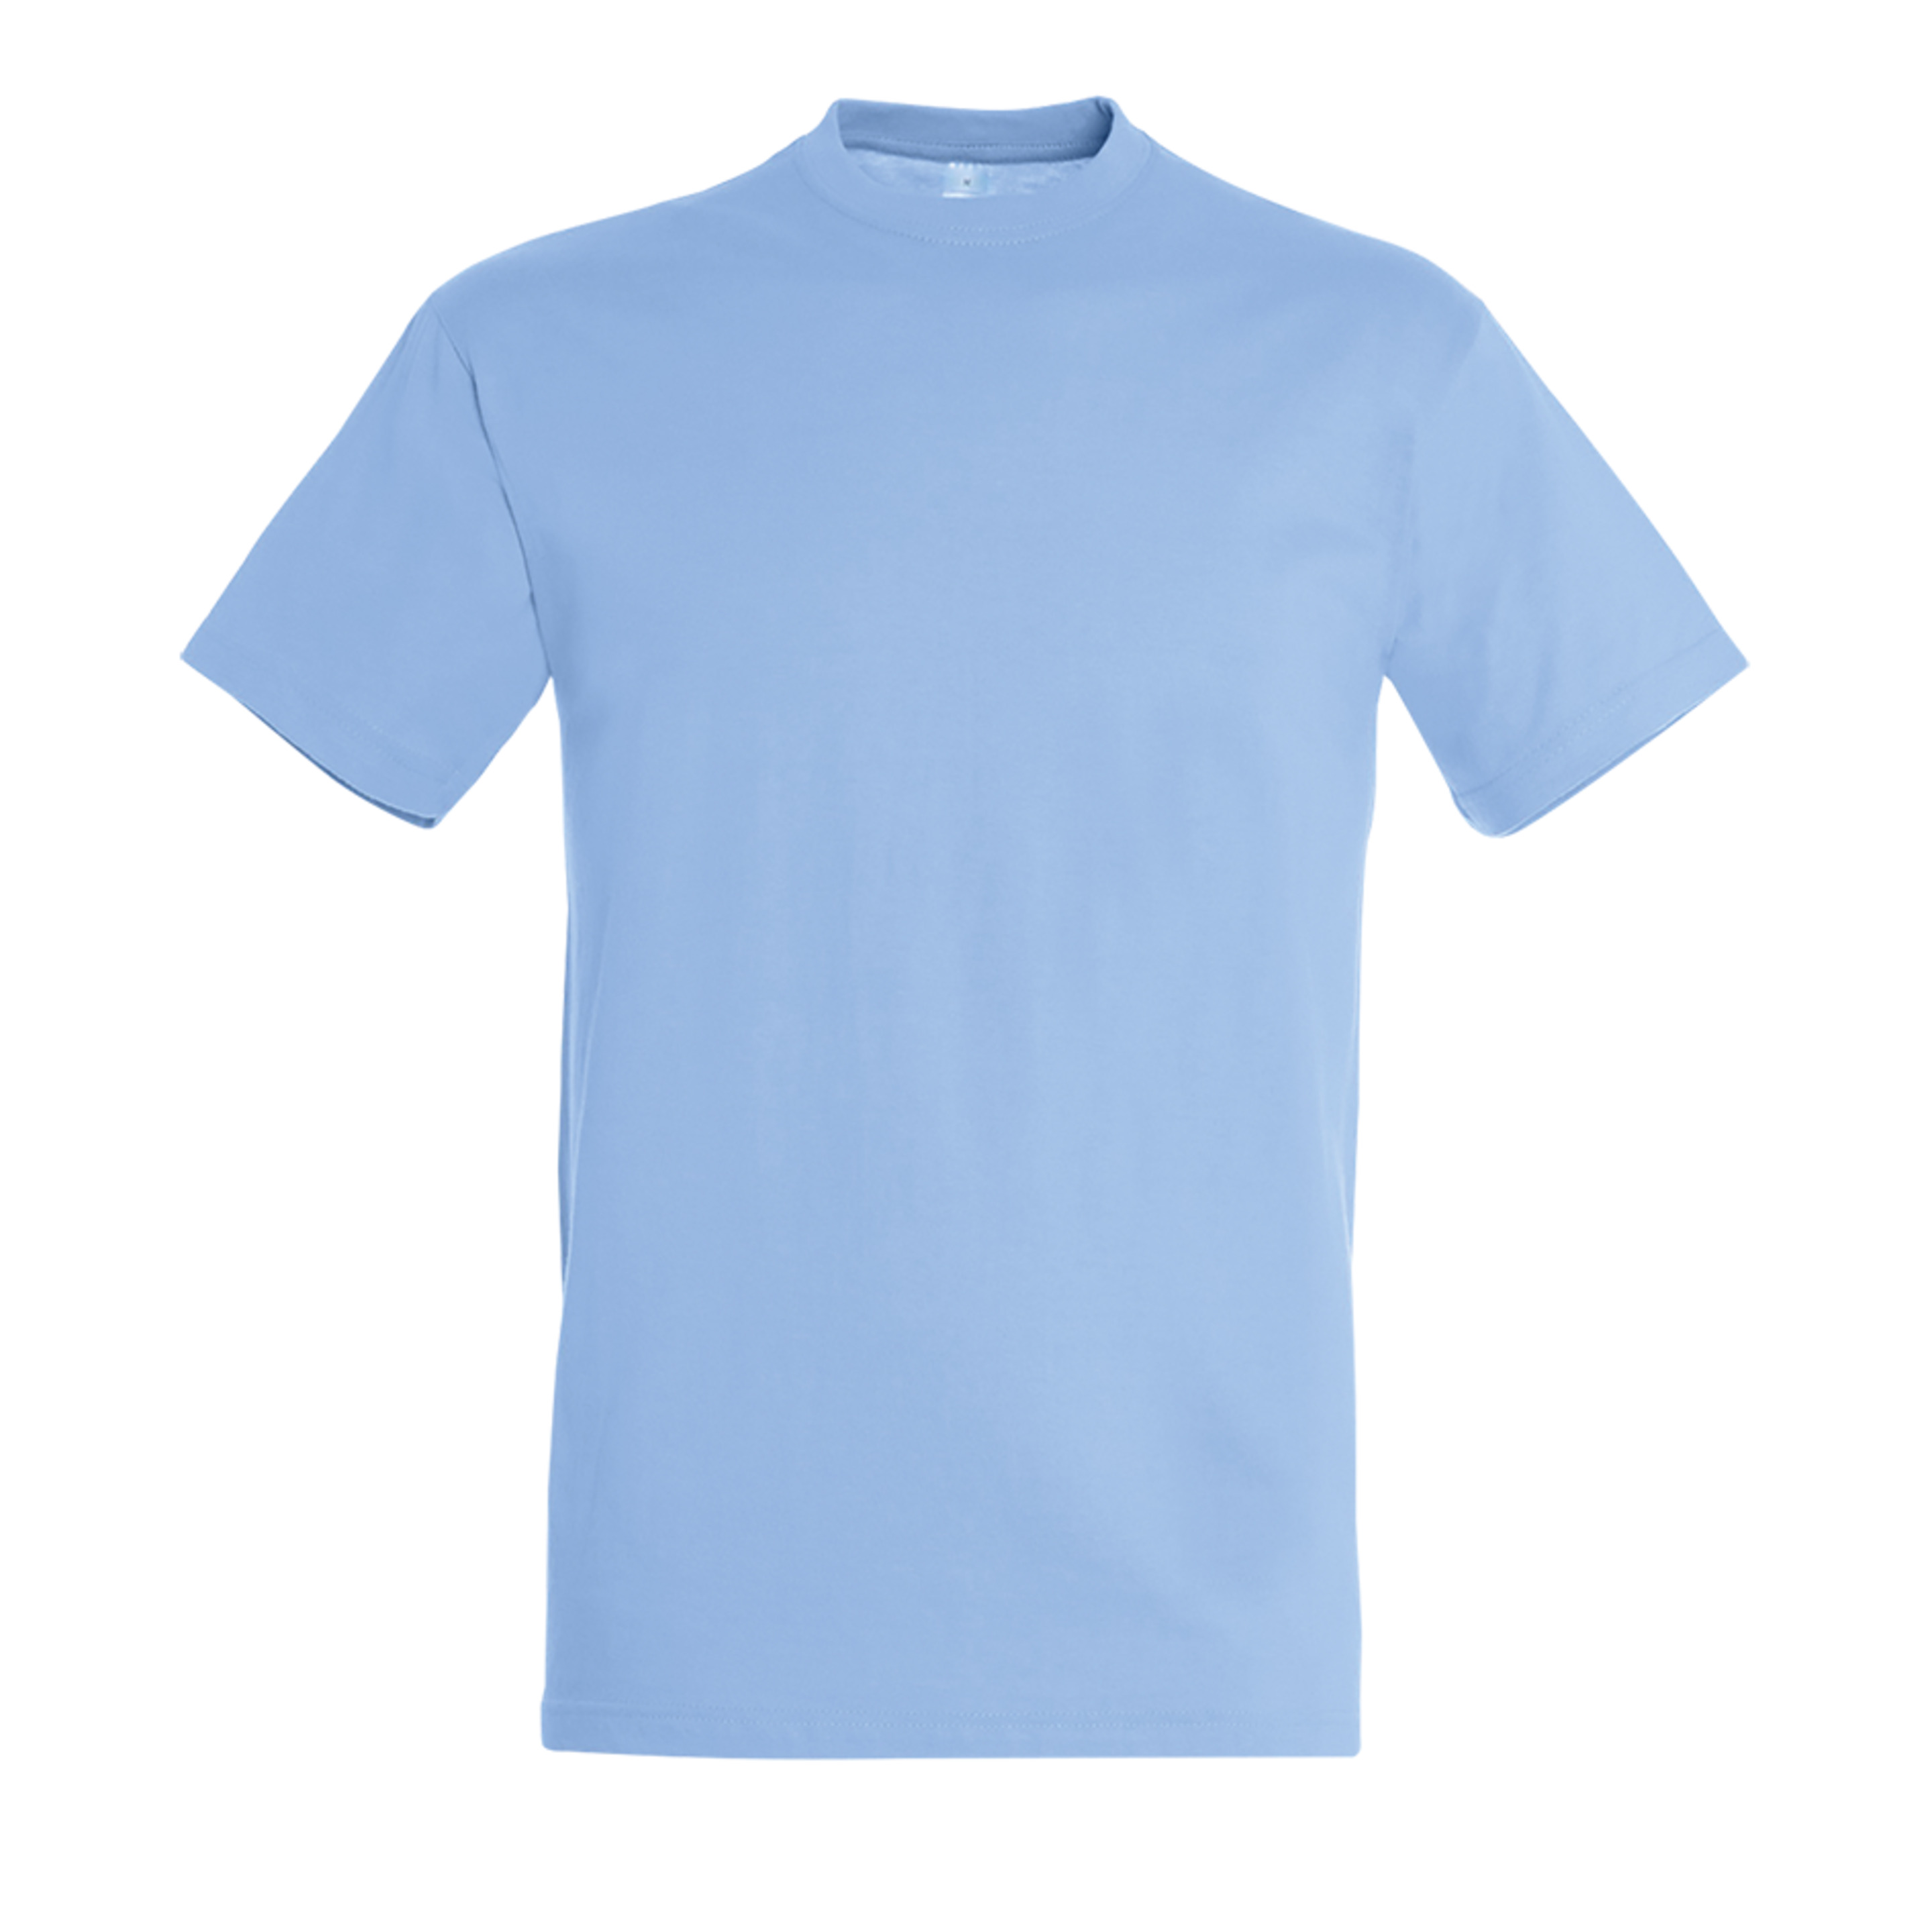 Pacote De 10 Camisetas / Camiseta Unisex Regent Crewneck